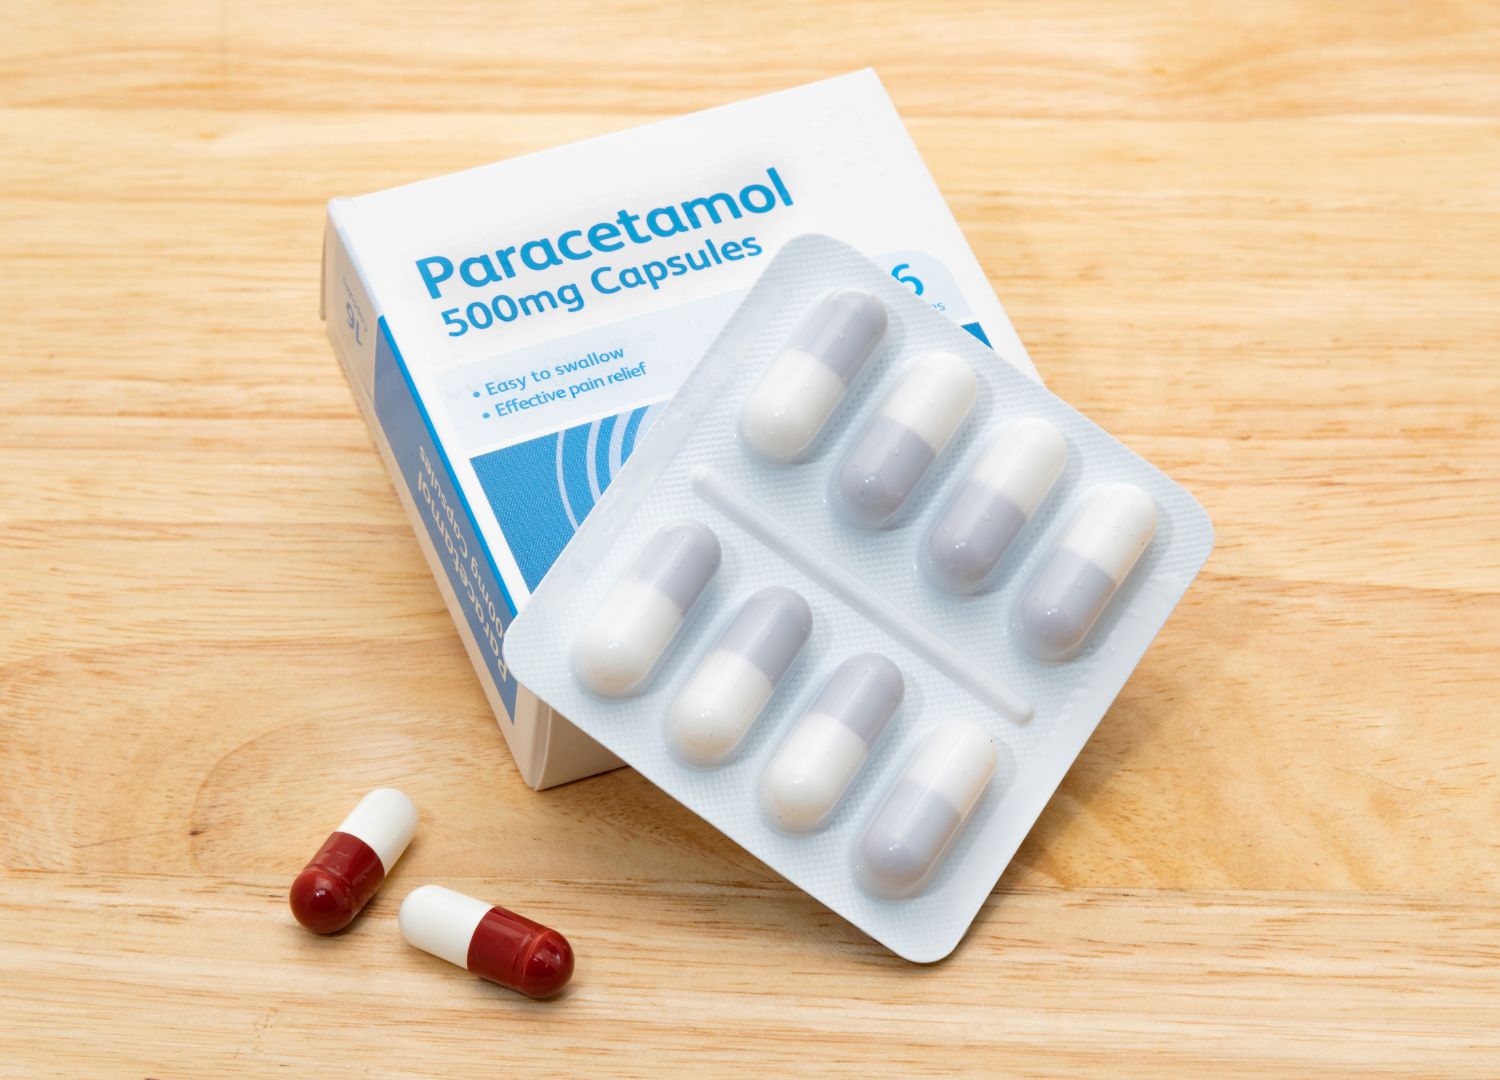 Paracetamol Overdose